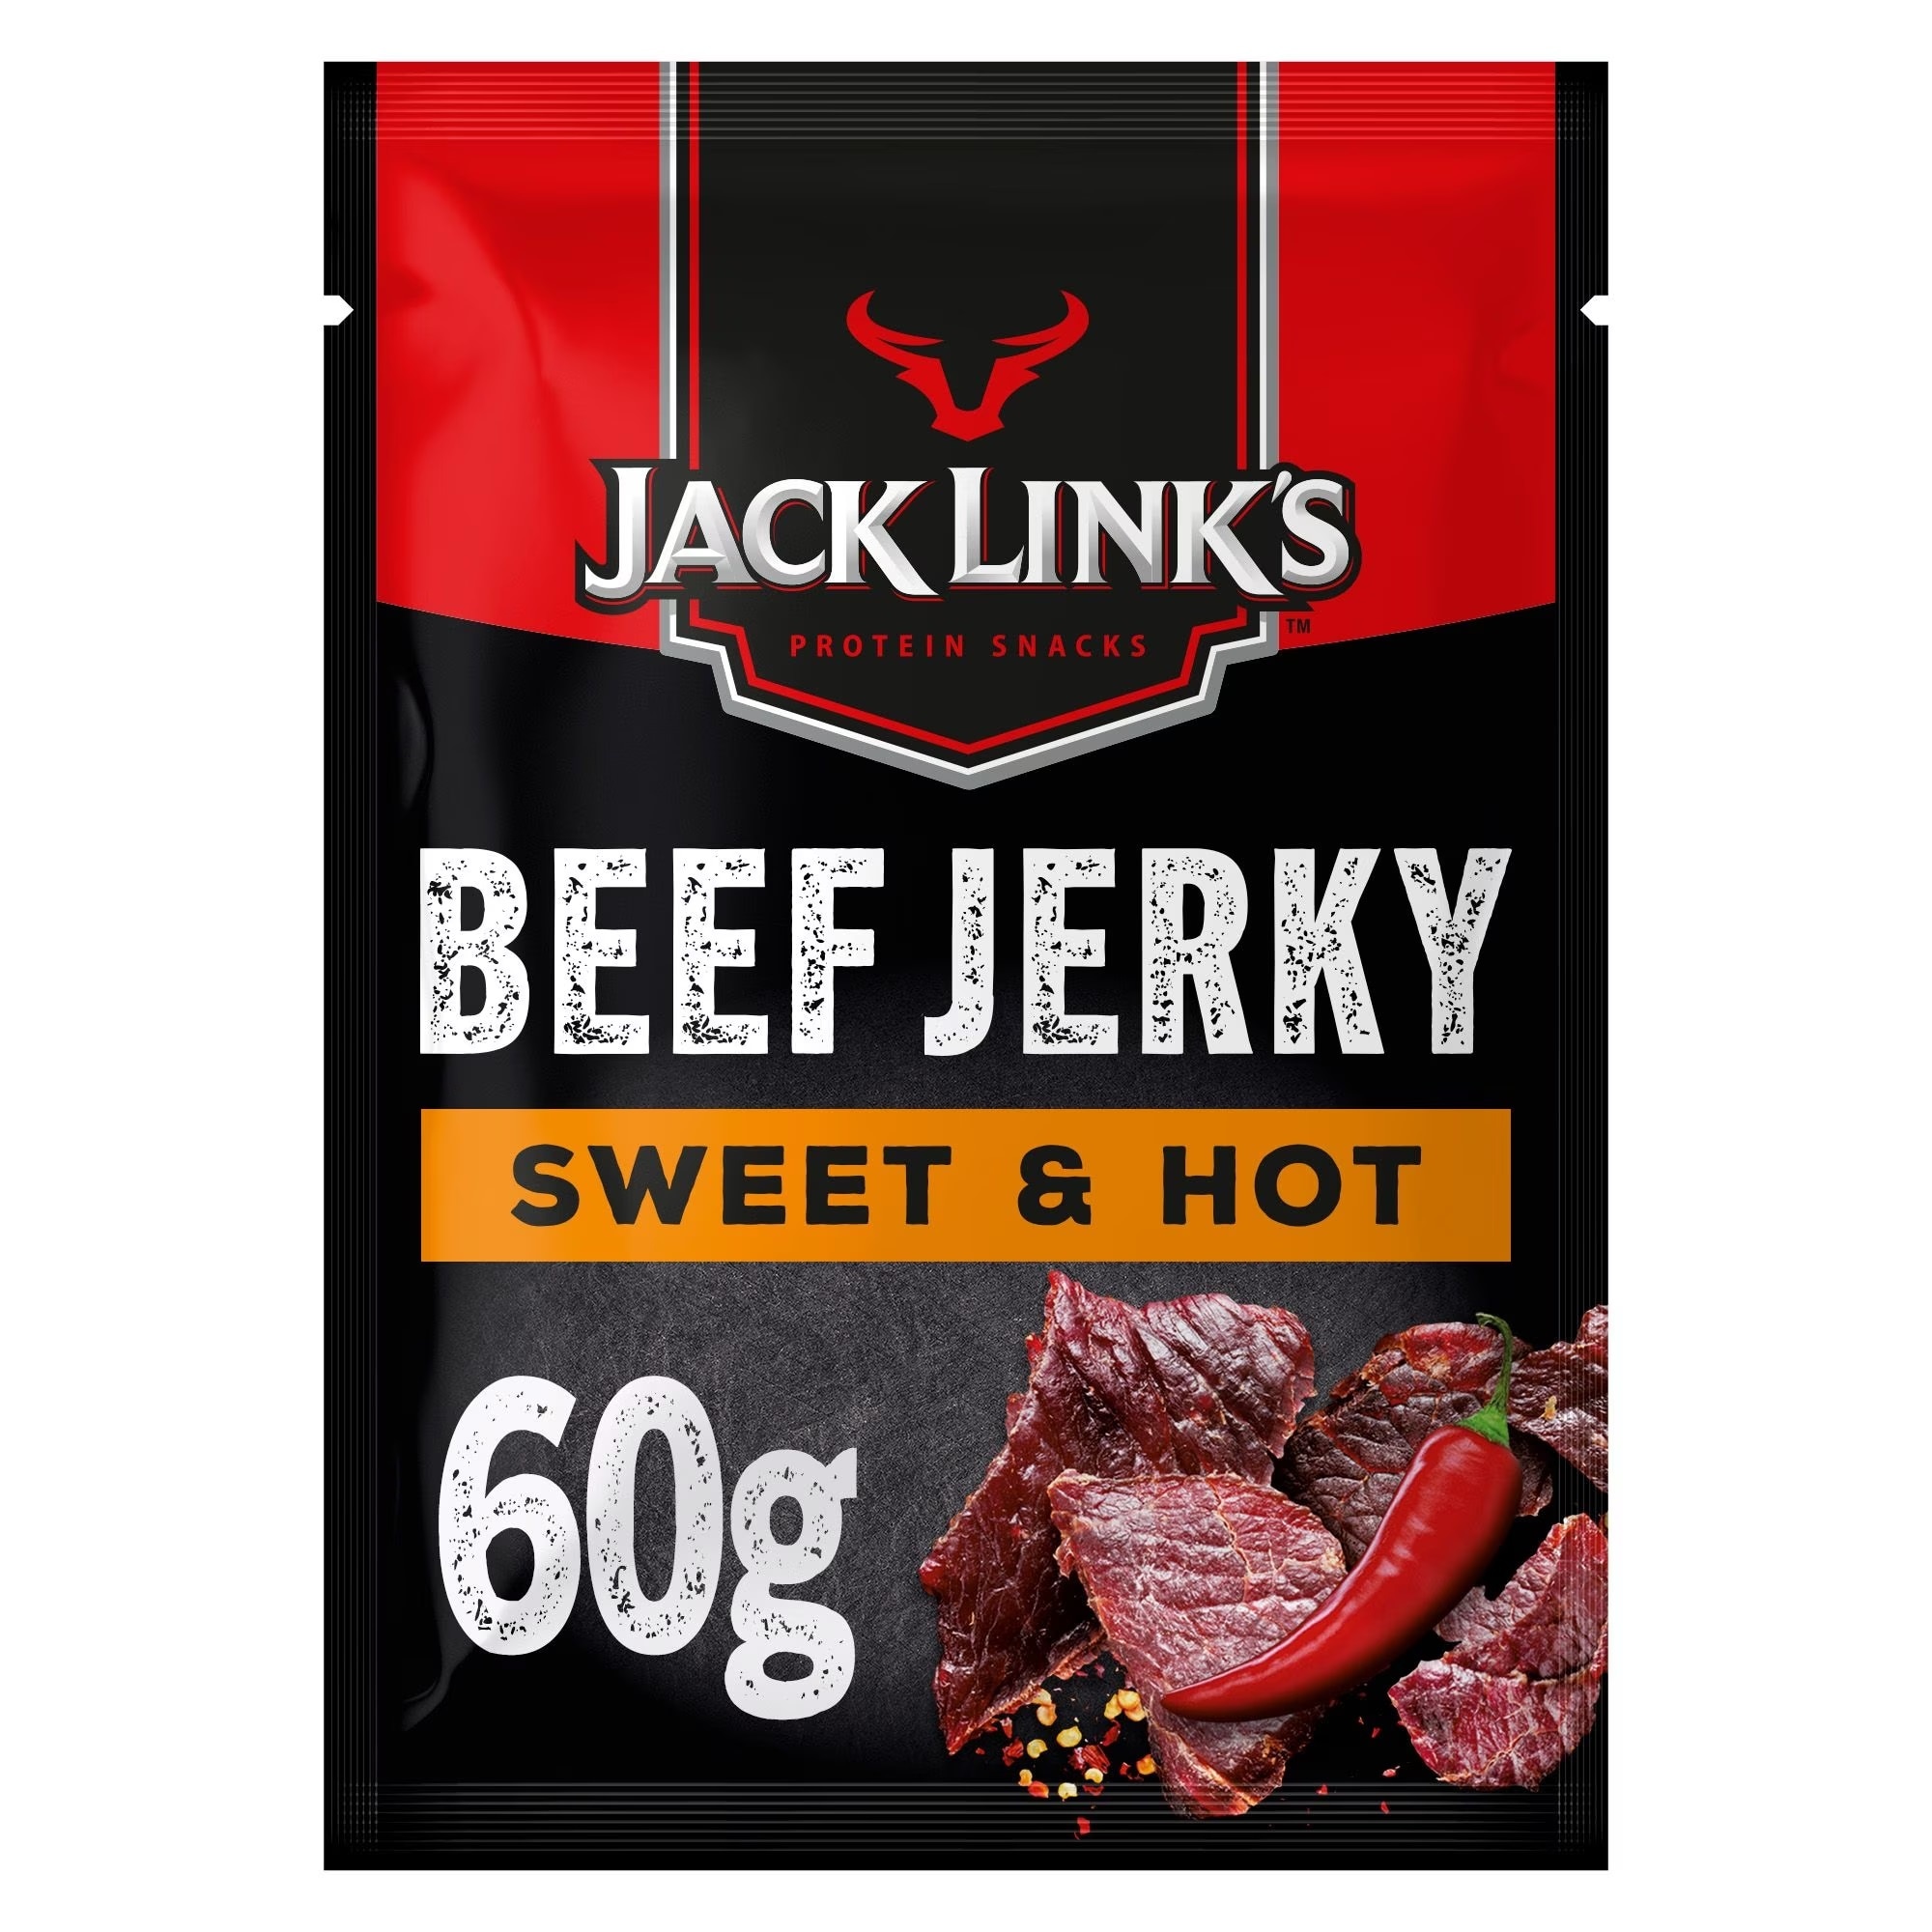 Suszona wołowina Jack Links - 4 x 60 g